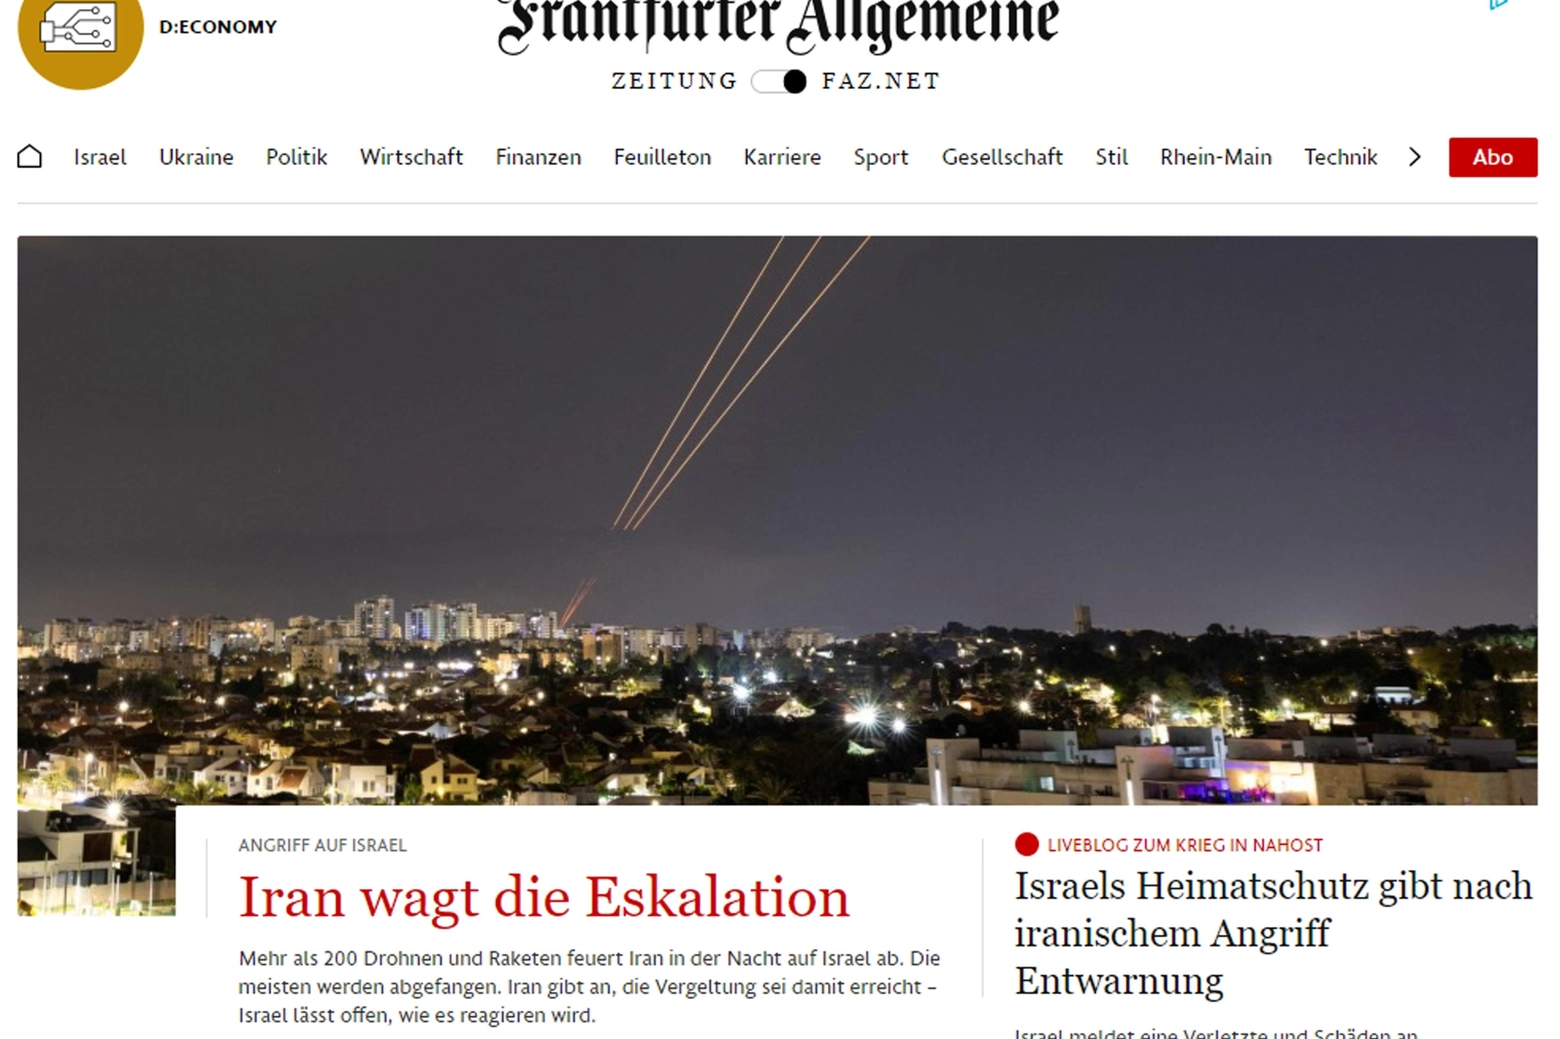 Frankfurter Allgemeine Zeitung: "L'Iran osa l'escalation"